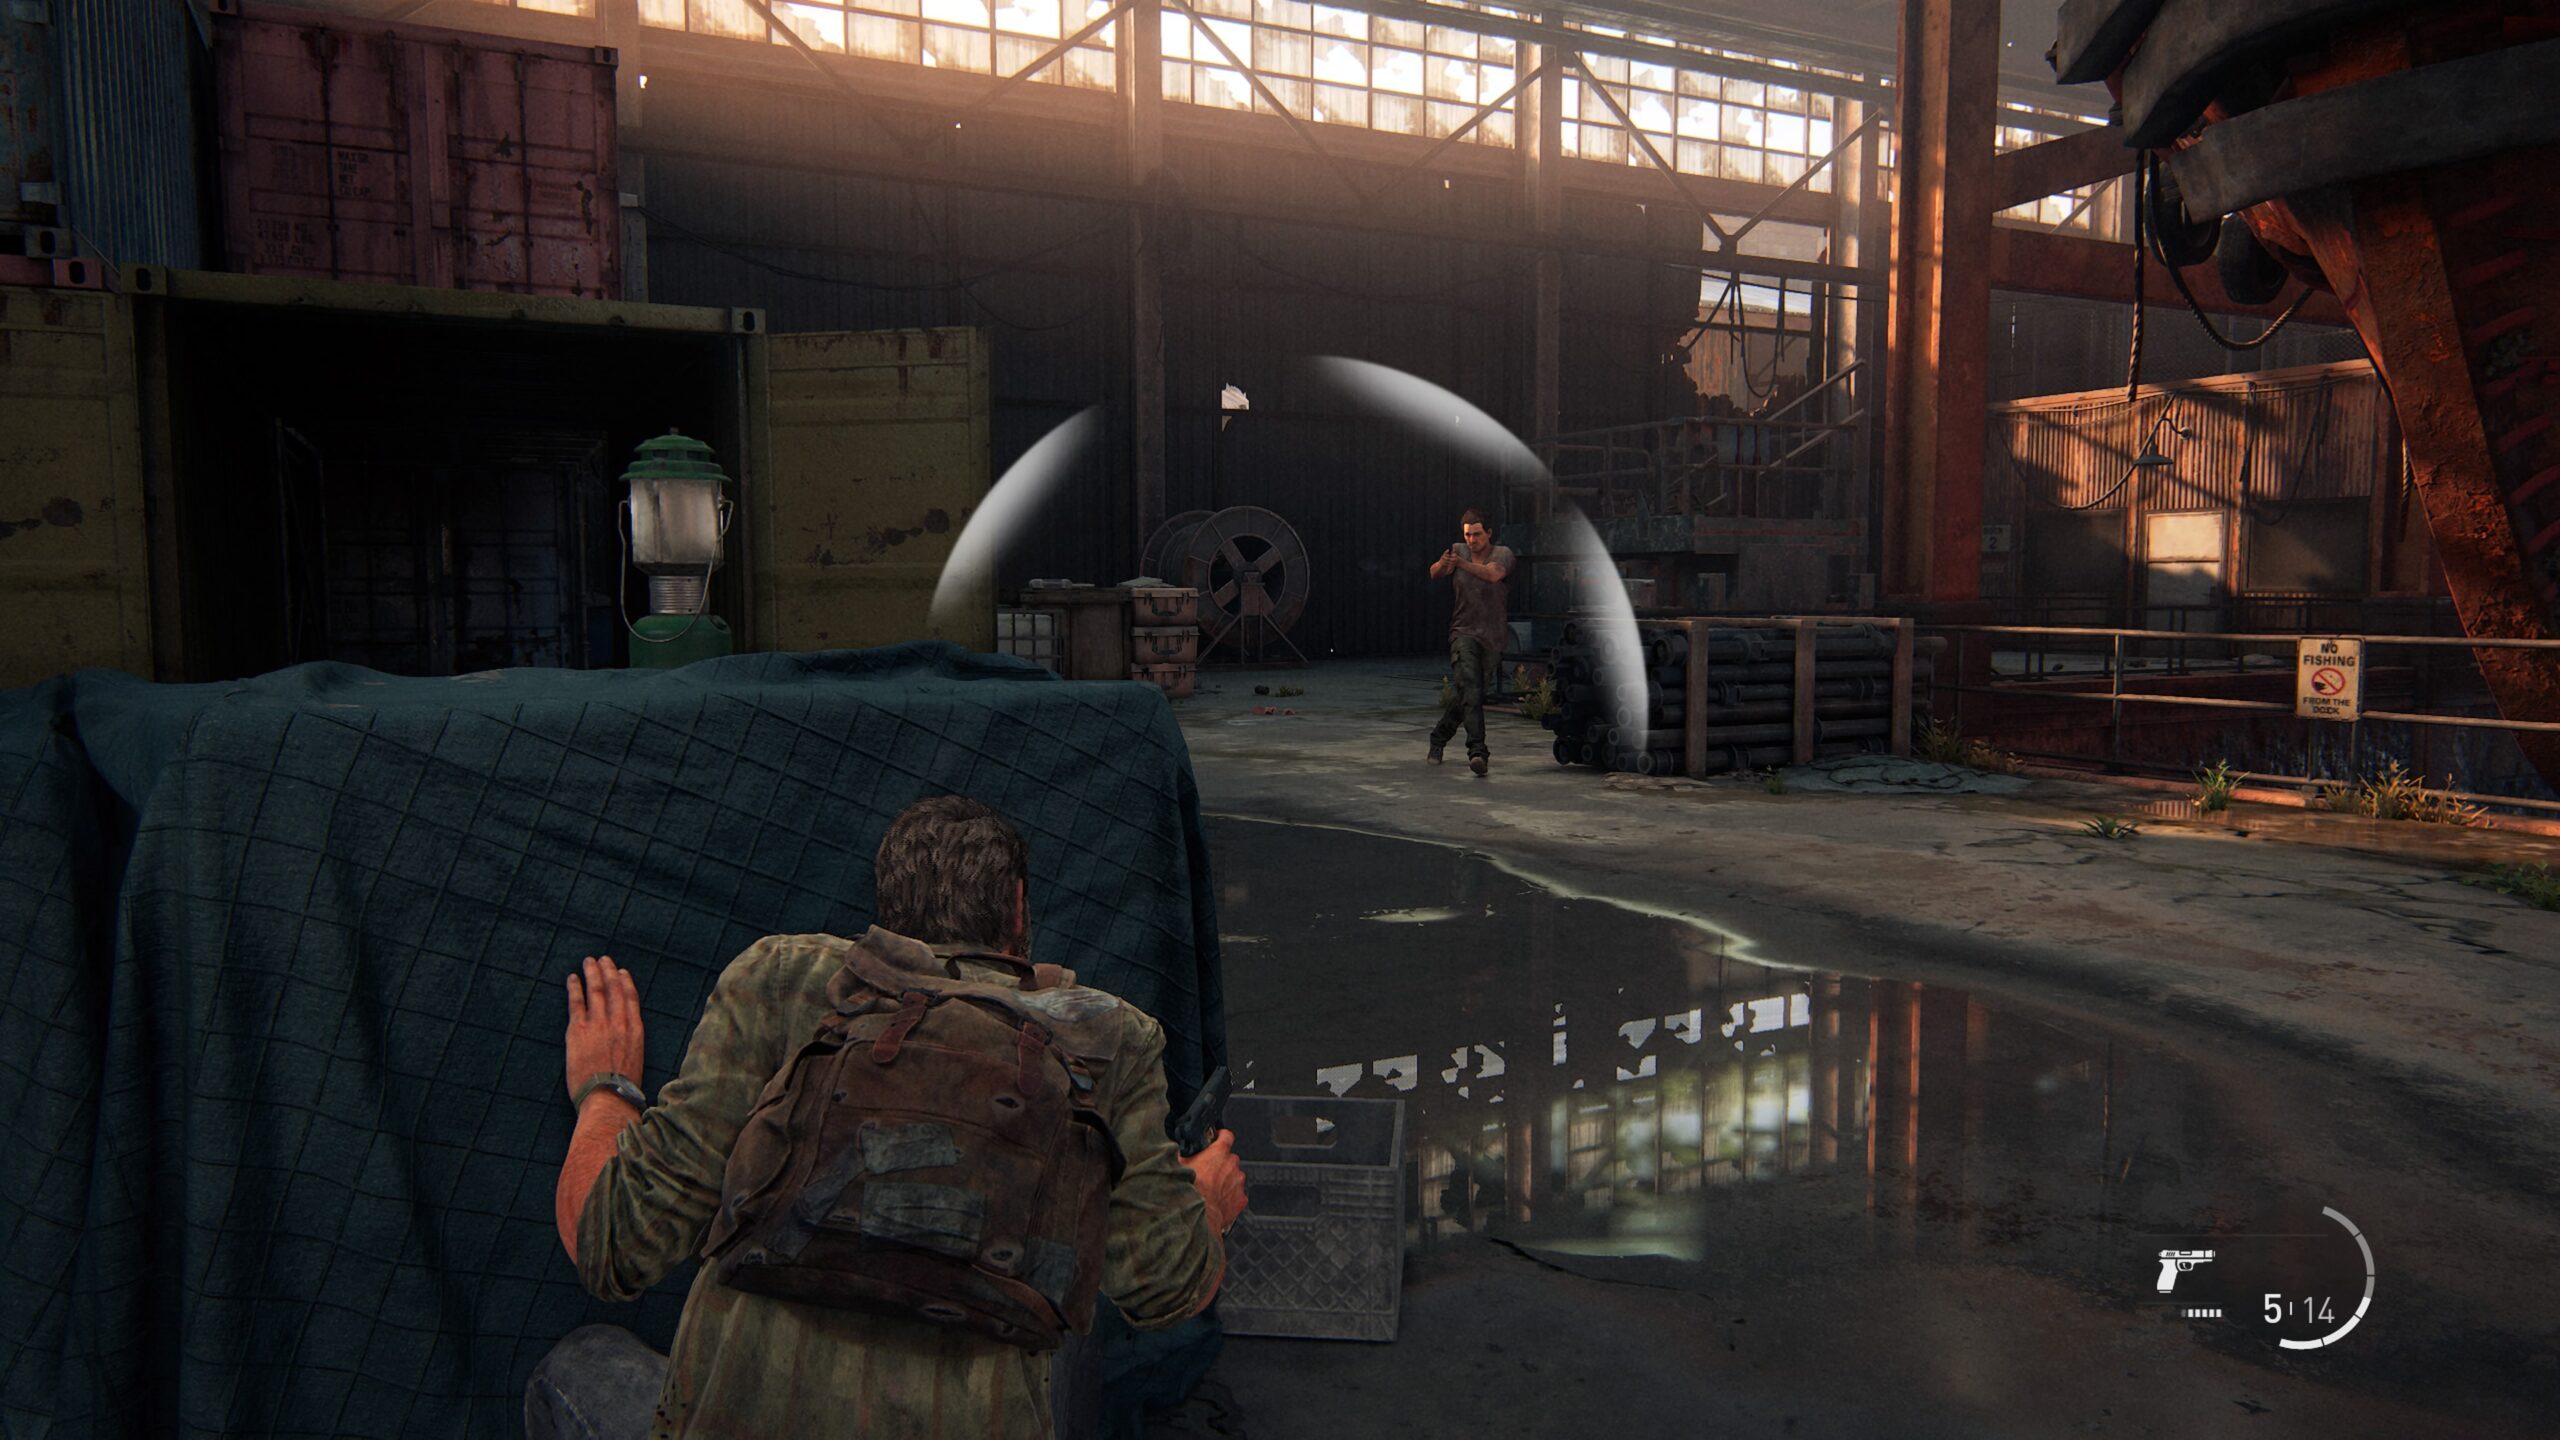 Imagens de The Last of Us Remake Part I mostram o quanto o jogo mudou